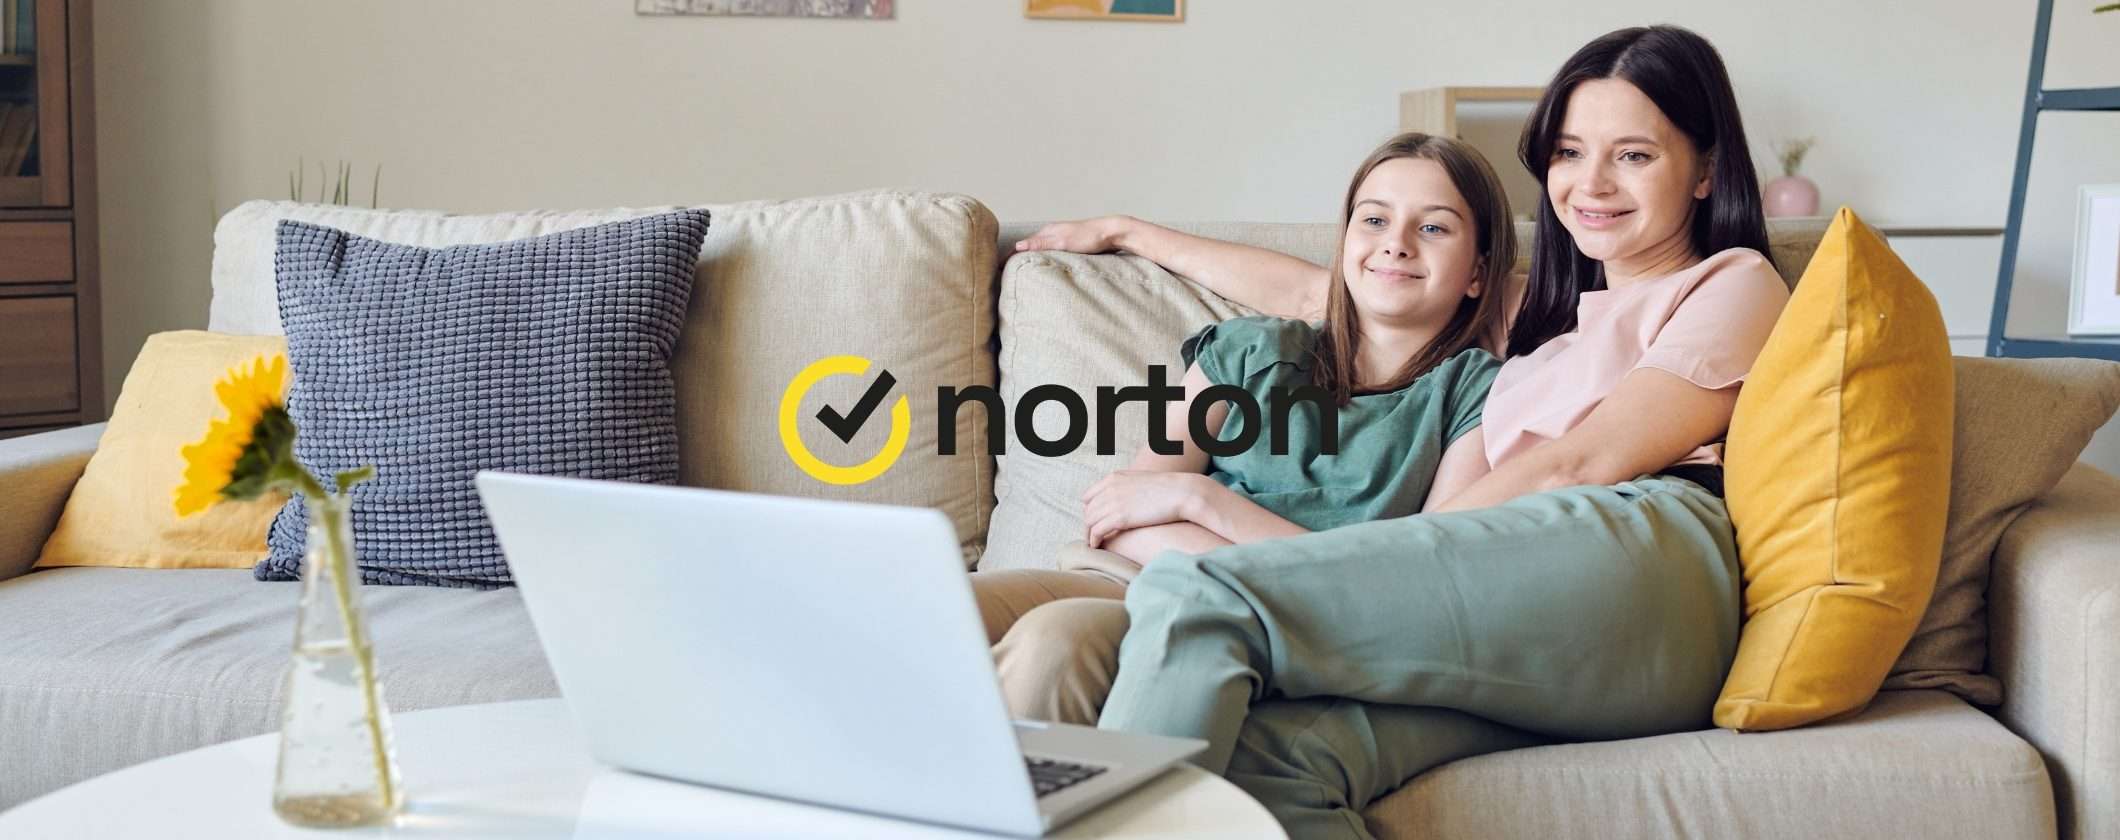 Norton 360 Antivirus: OGGI fino al 66% di SCONTO